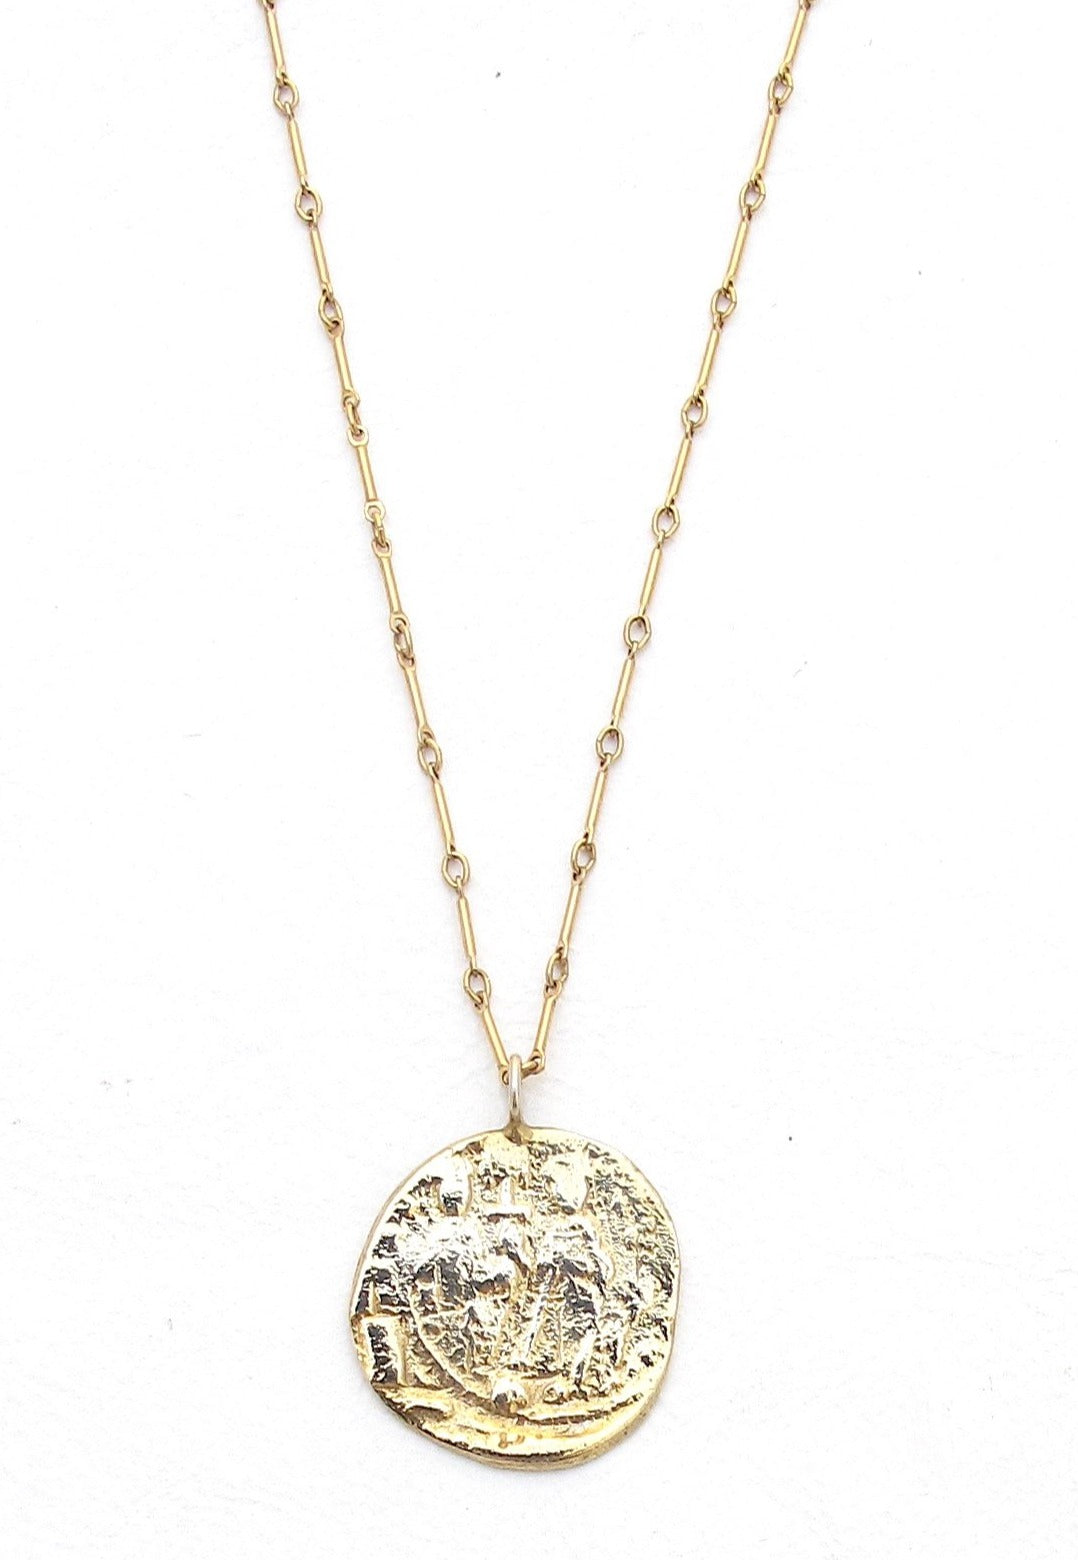 Byzantine pendant necklace